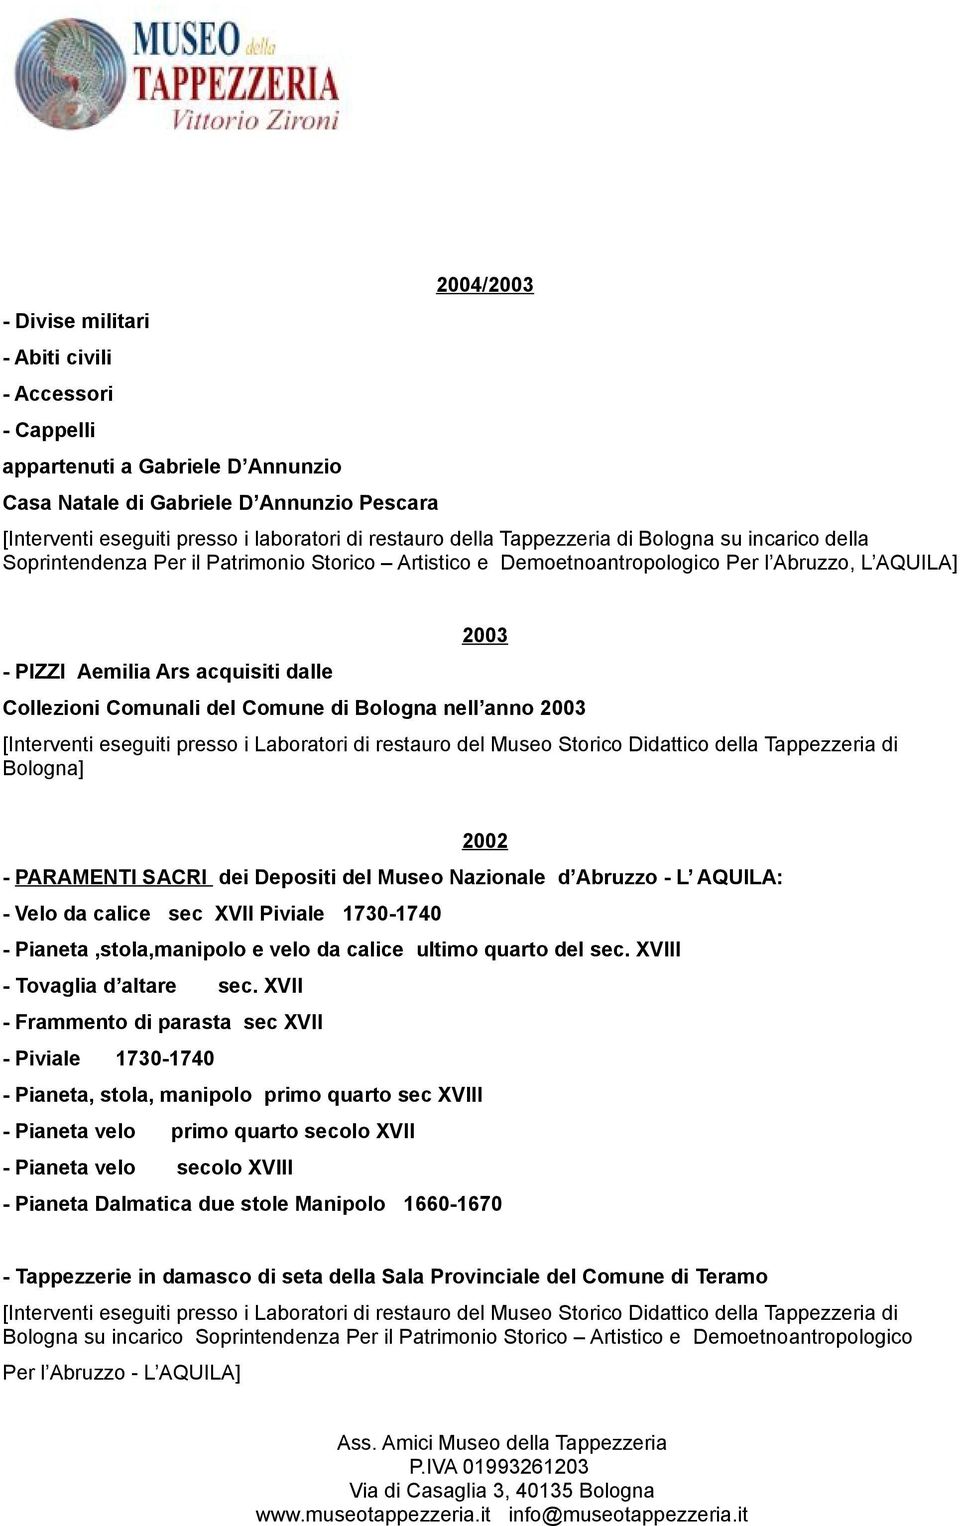 Comunali del Comune di Bologna nell anno 2003 2002 - PARAMENTI SACRI dei Depositi del Museo Nazionale d Abruzzo - L AQUILA: - Velo da calice sec XVII Piviale 1730-1740 - Pianeta,stola,manipolo e velo